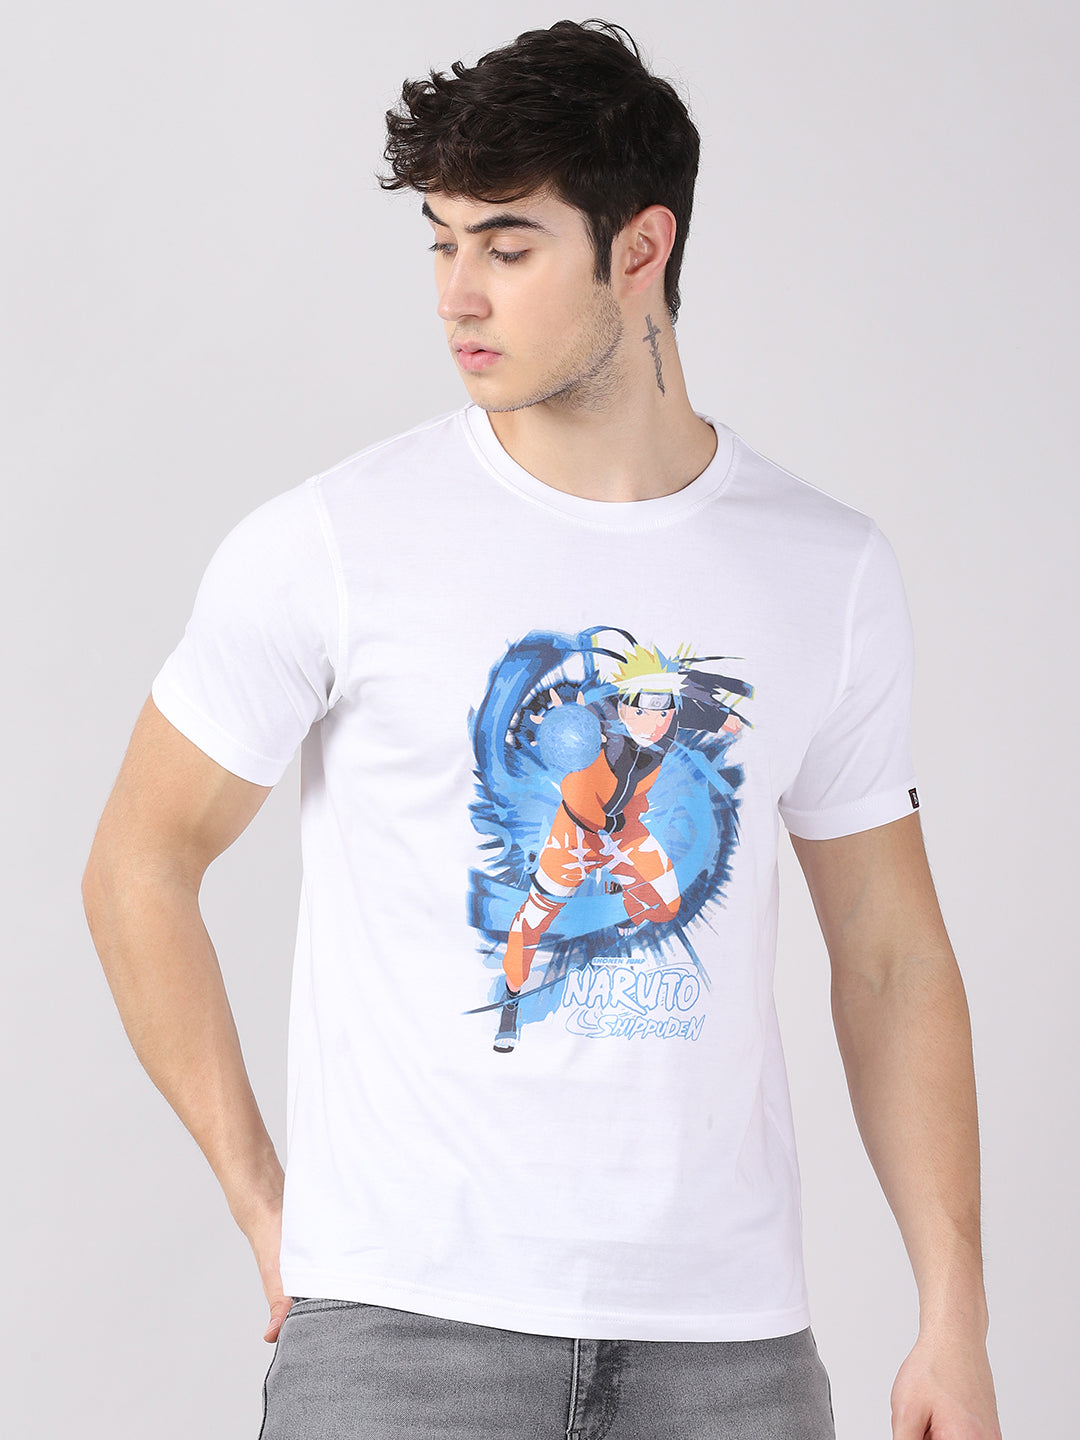 Naruto Shippuden - Naruto Anime T-Shirt Graphic T-Shirts Bushirt   